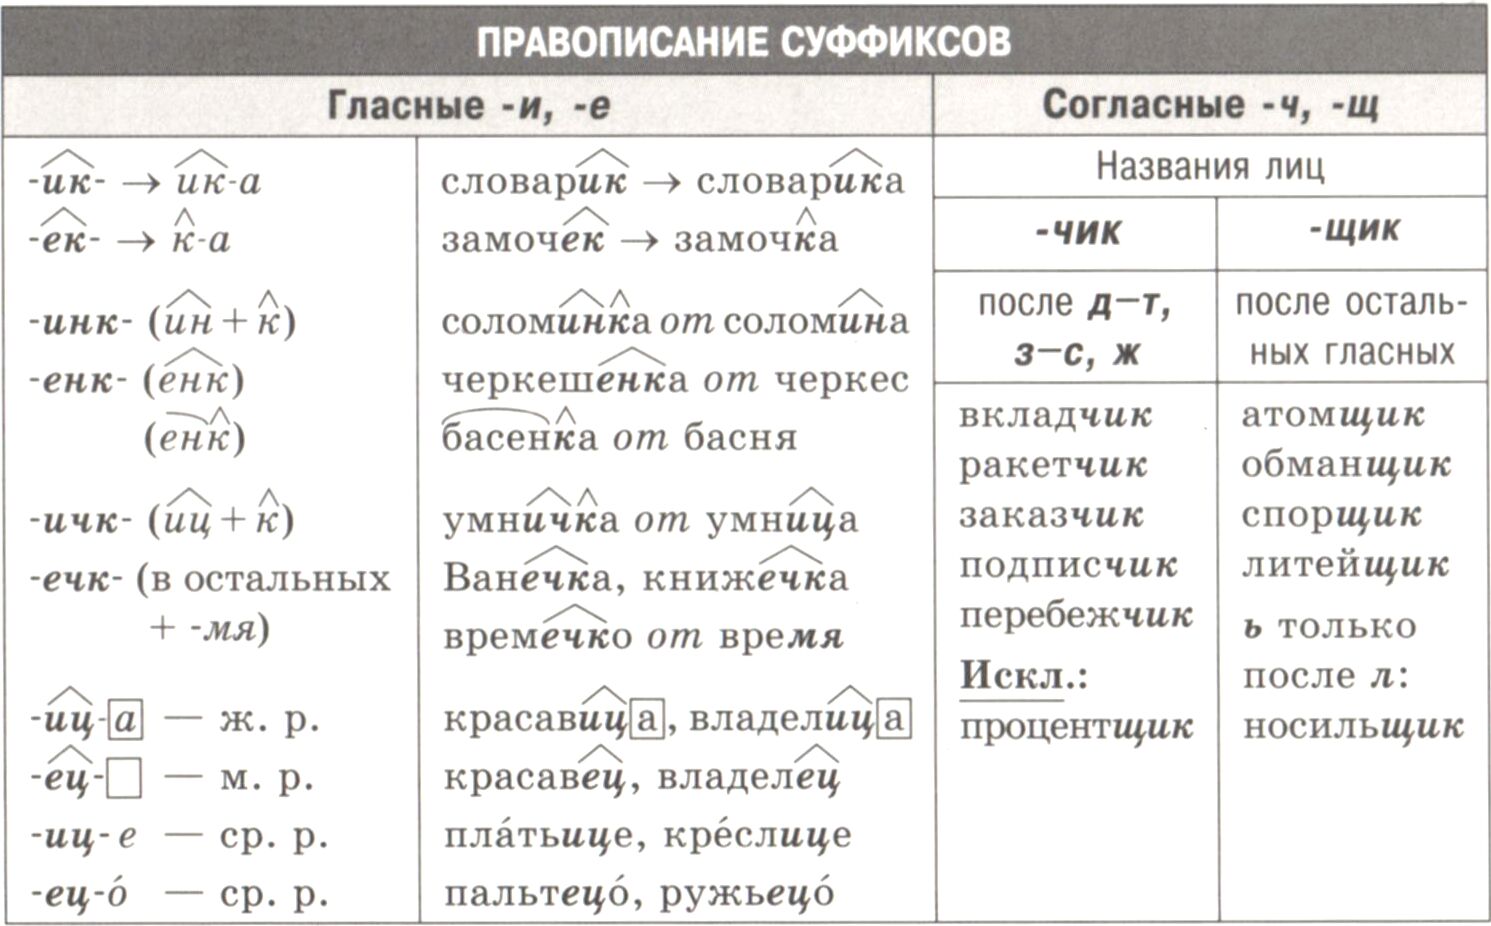 Методические рекомендации для самостоятельной работы студентов по русскому языку